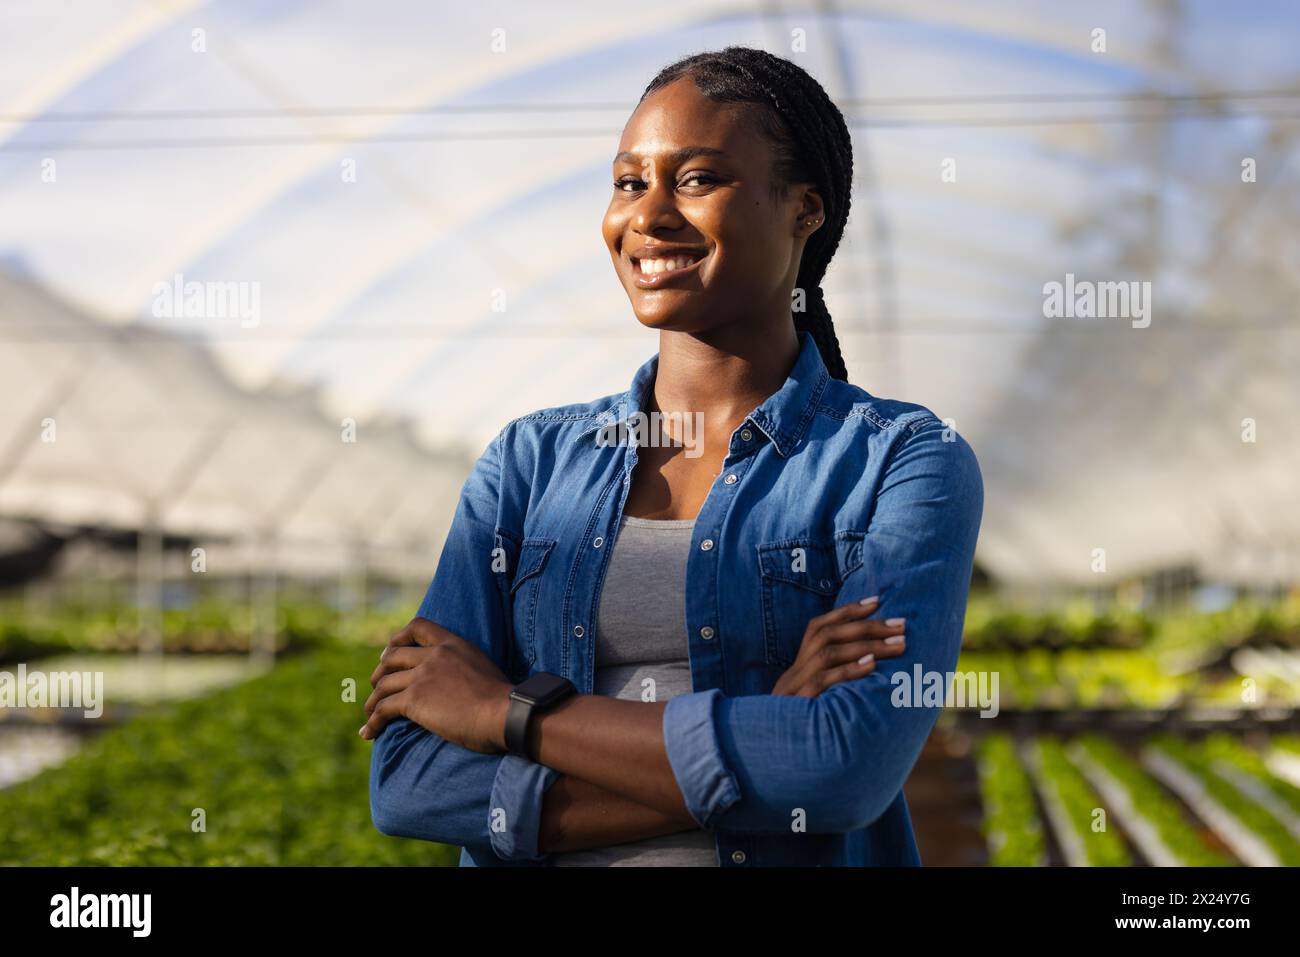 Jeune agricultrice afro-américaine debout, les bras croisés, souriante, dans une serre hydroponique. Elle a les cheveux tressés foncés, portant une chemise bleue, Banque D'Images